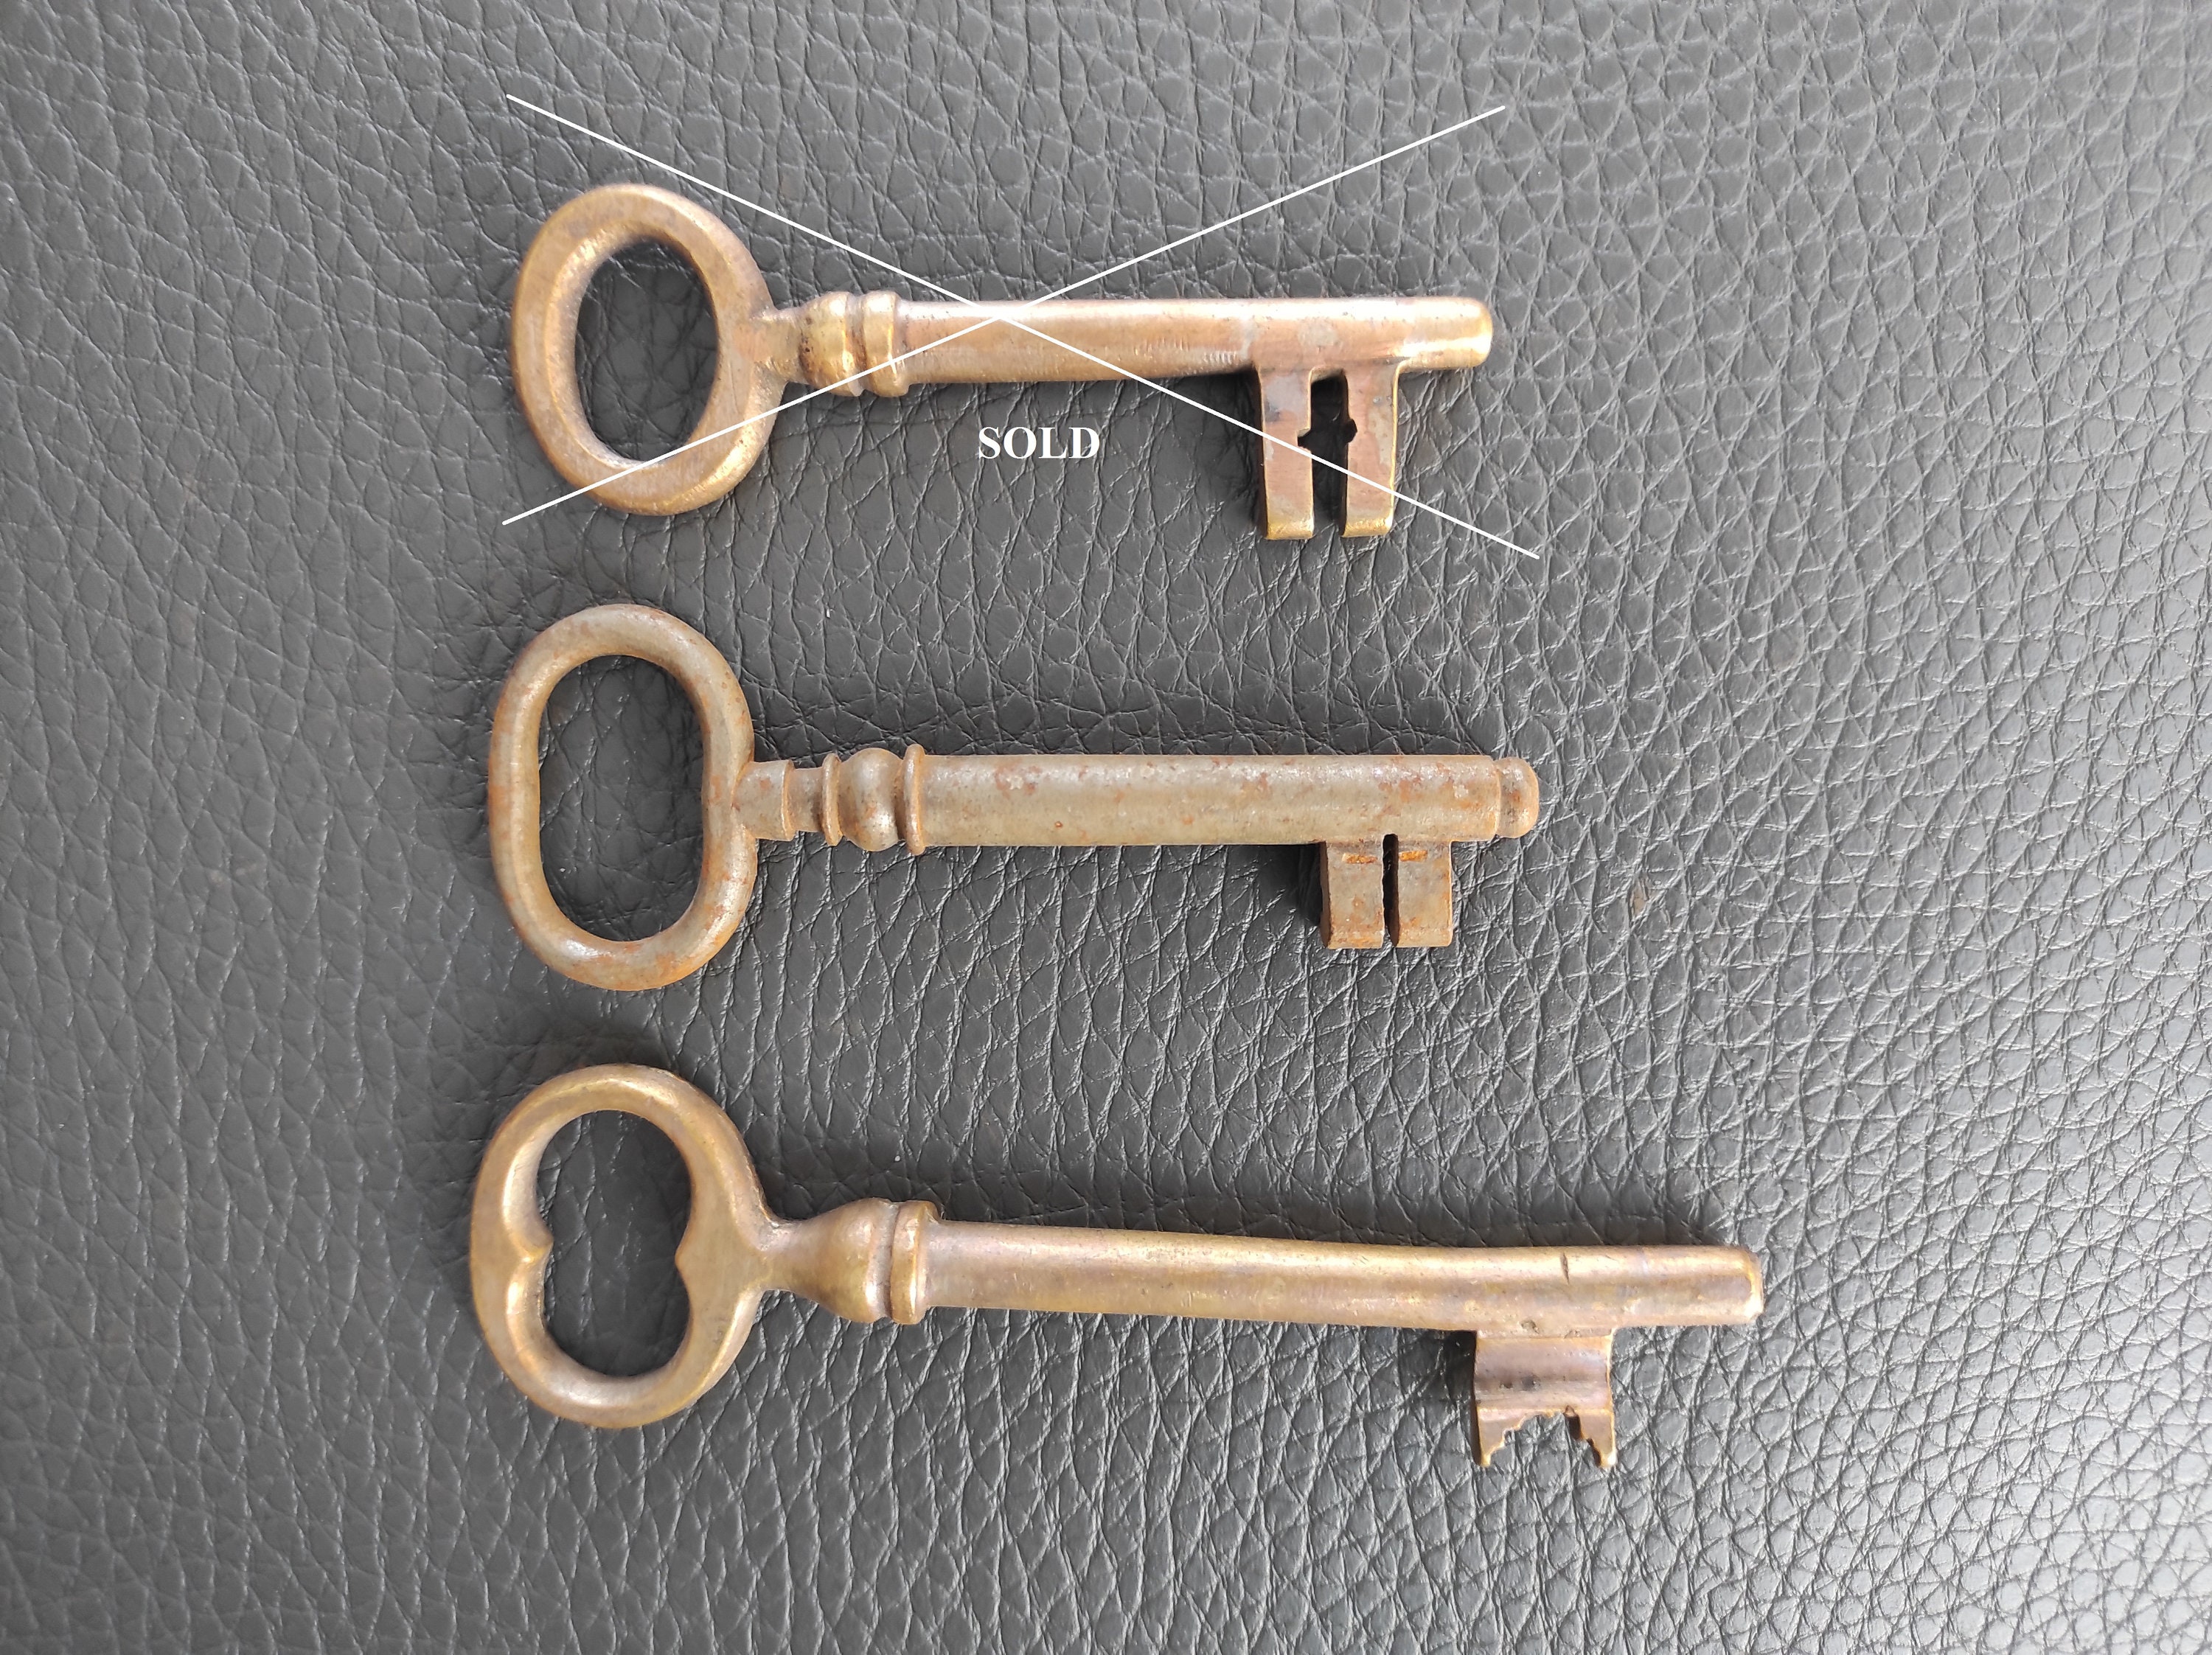 Small Locks With Keys, Vintage Padlocks, Tiny Lock, Miniature